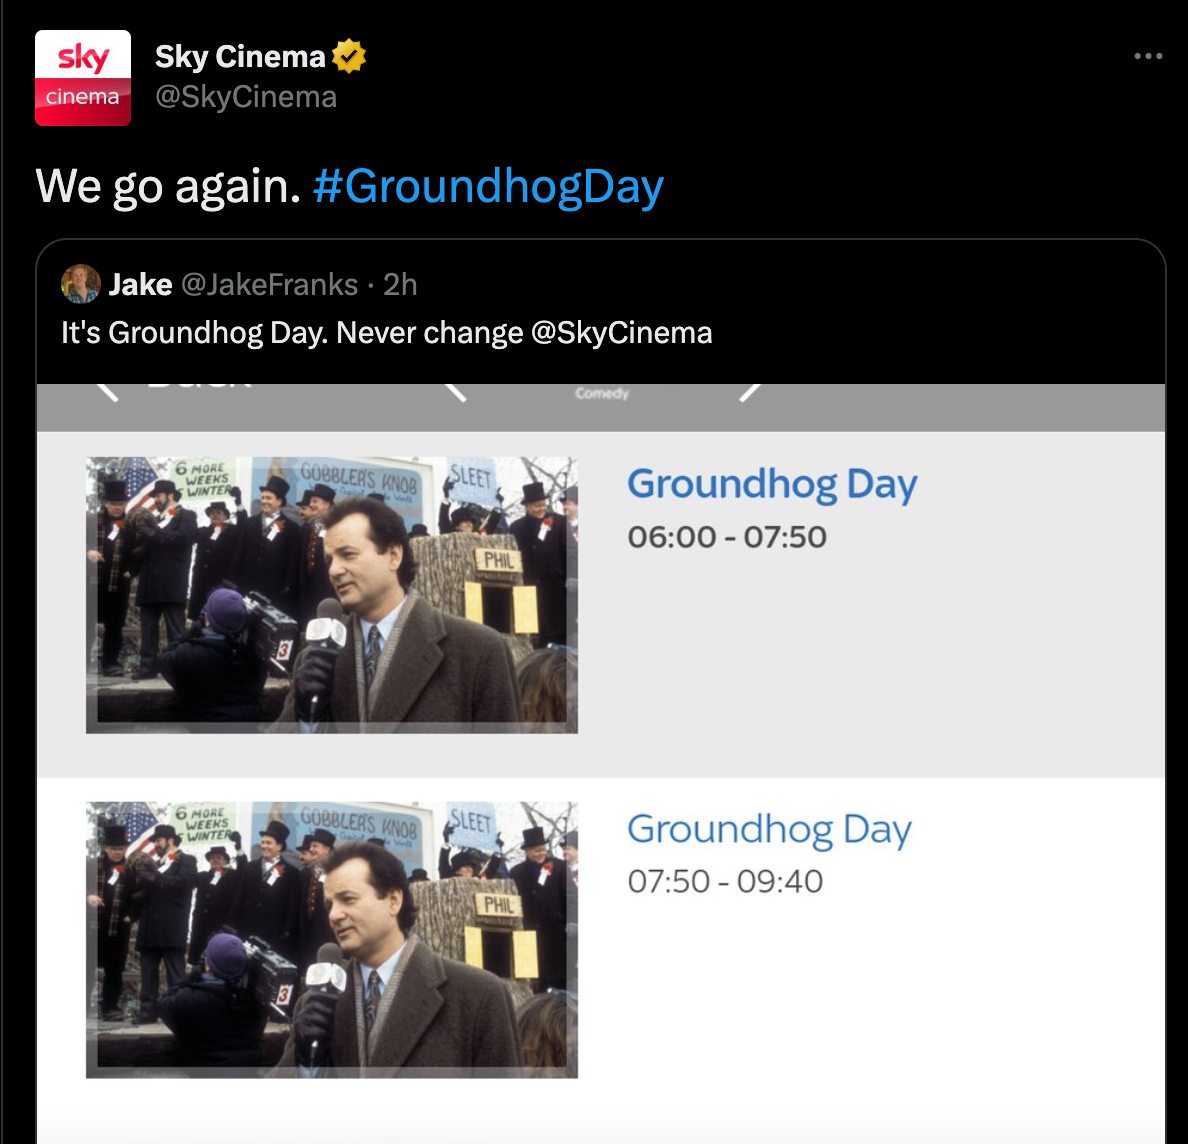 ‘Groundhog Day’ is being shown on loop on Sky Cinema